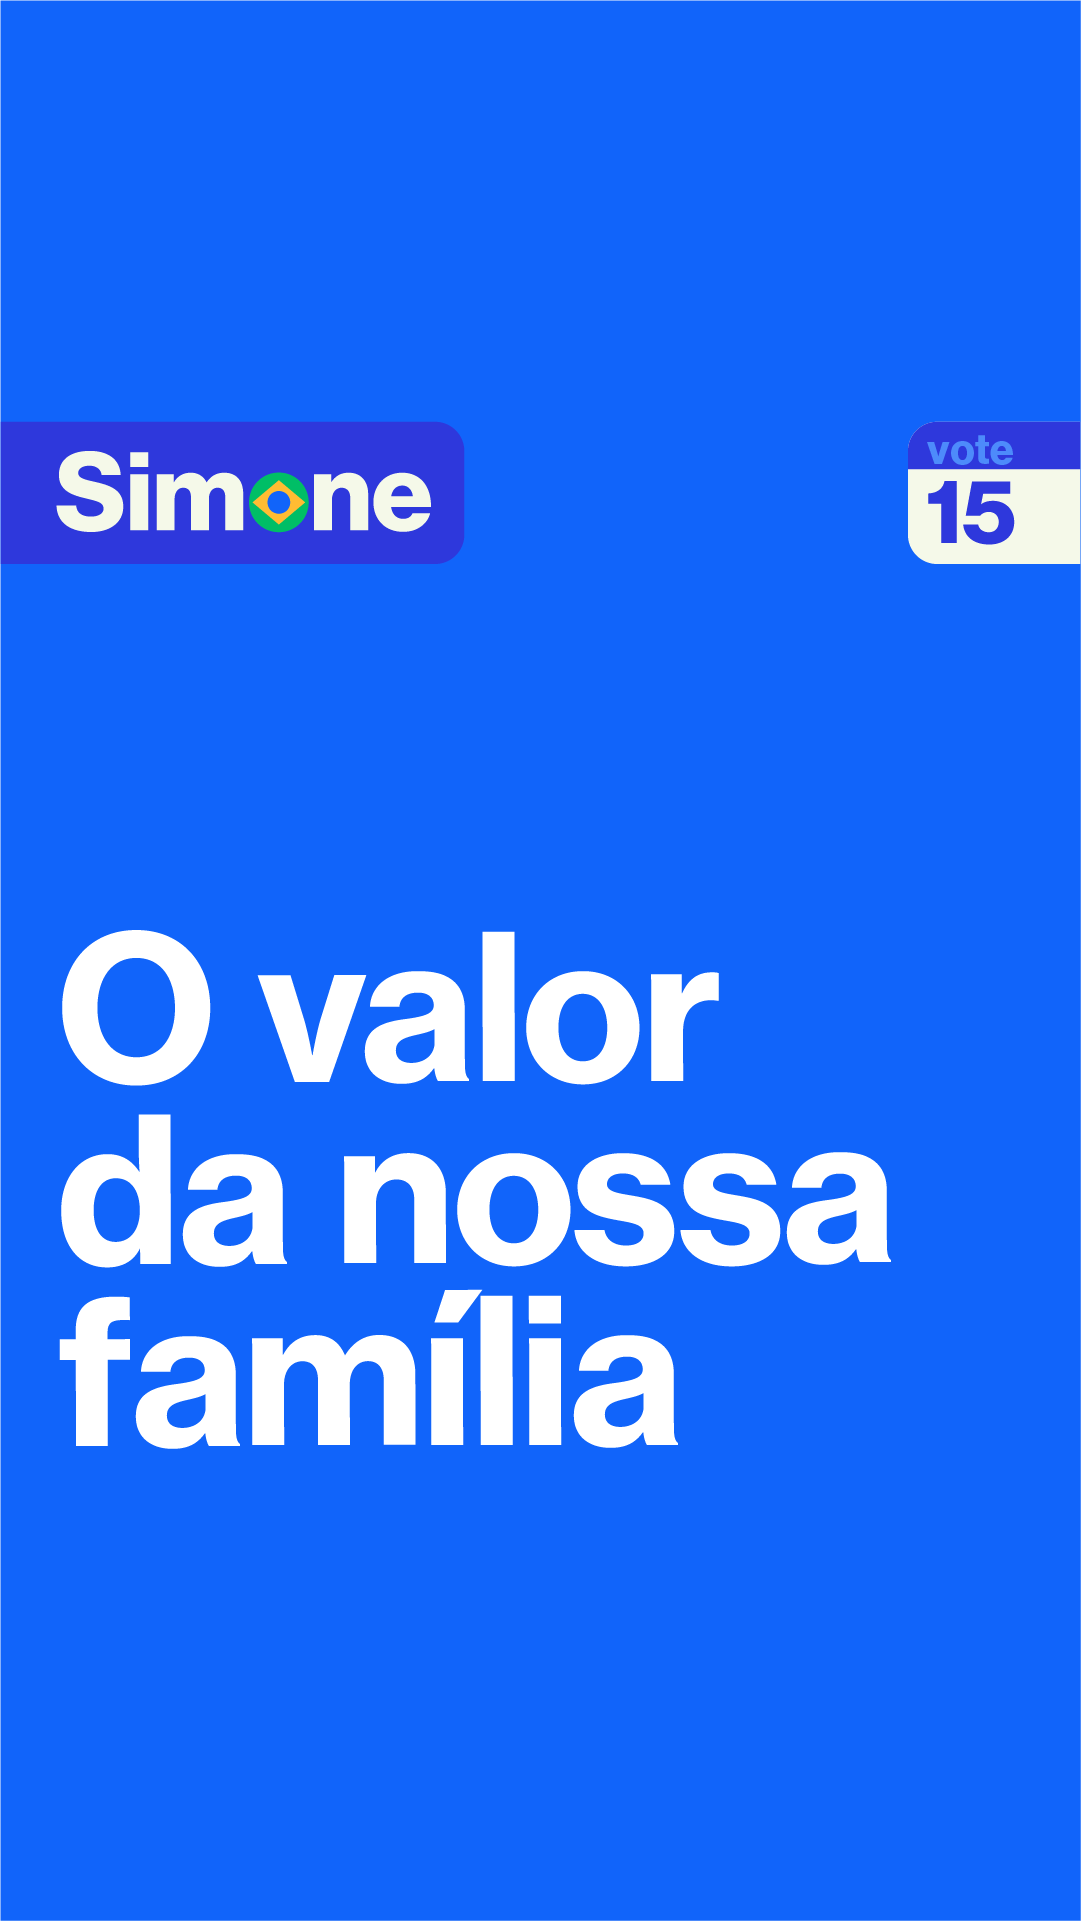 O valor da nossa família. Vamos juntos, com amor e coragem a gente muda o Brasil de verdade